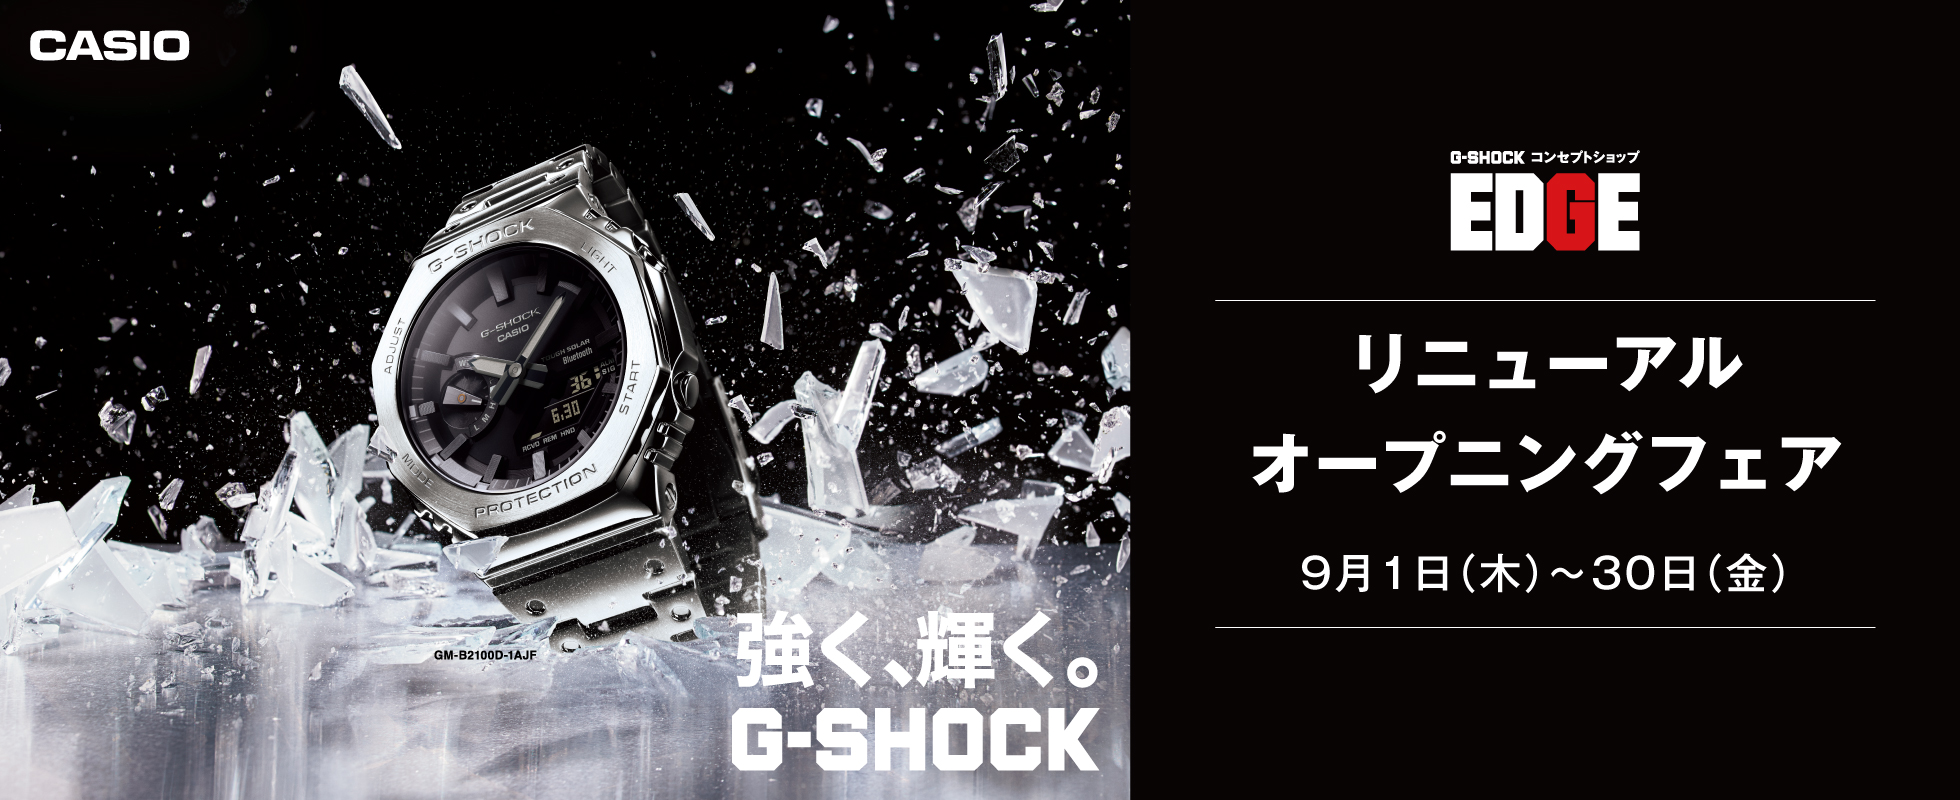 カシオ G-SHOCK EDGE コーナー リニューアル オープニング フェア
